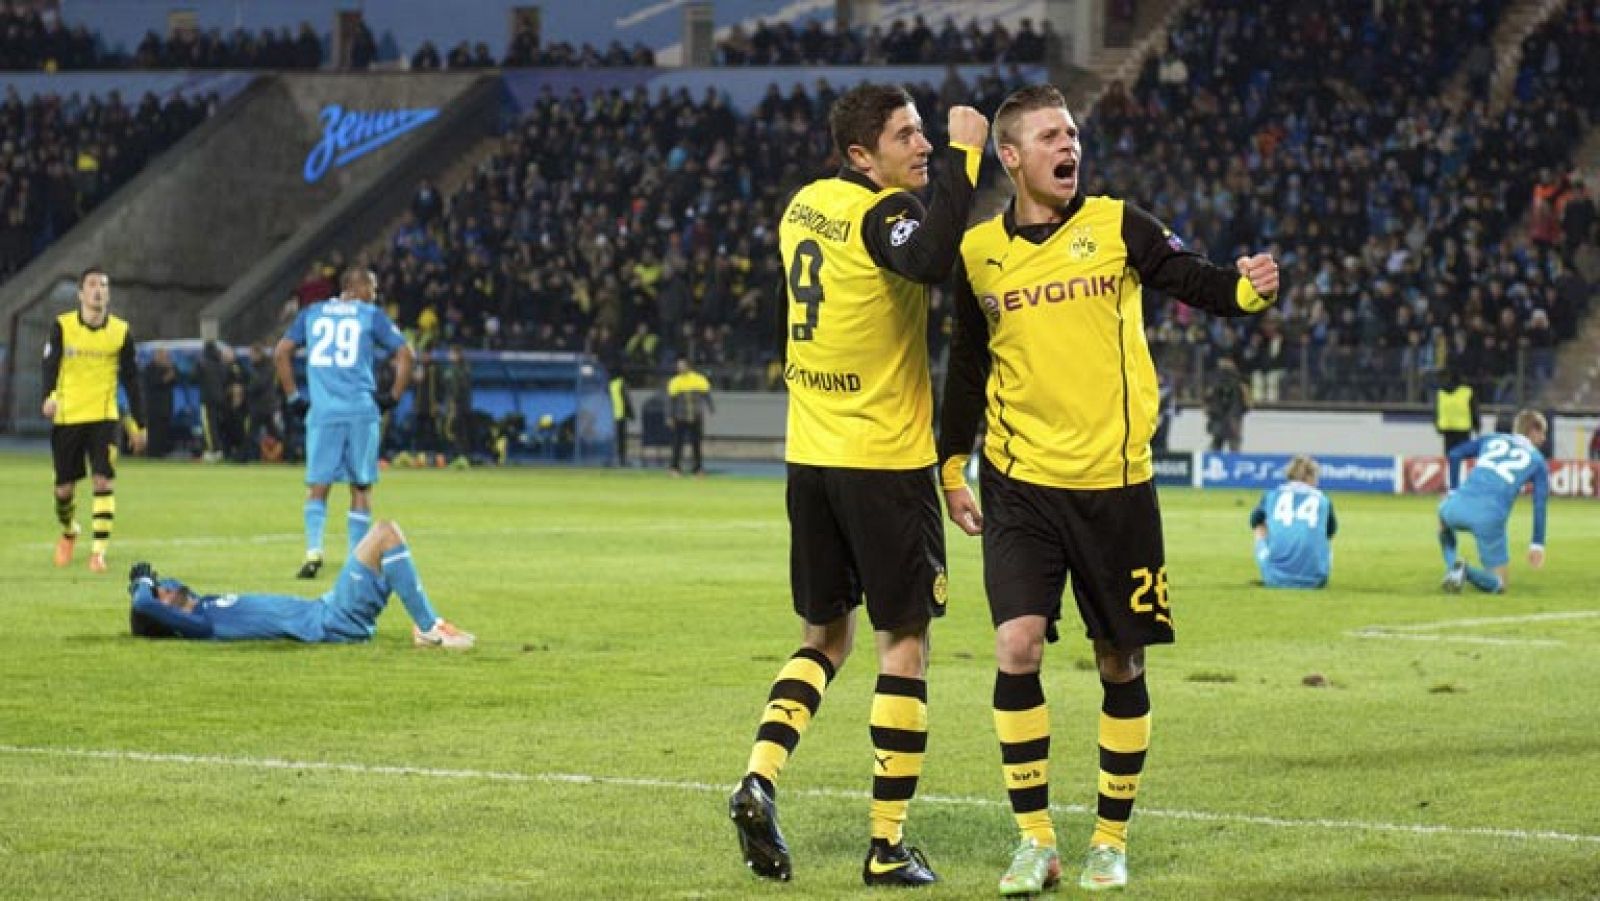 El Borussia de Dortmund se paseó en su visita al campo del Zenit. A los cinco minutos de partido ya iba 0-2 a favor de los alemanes. El resultado final fue de 2-4.